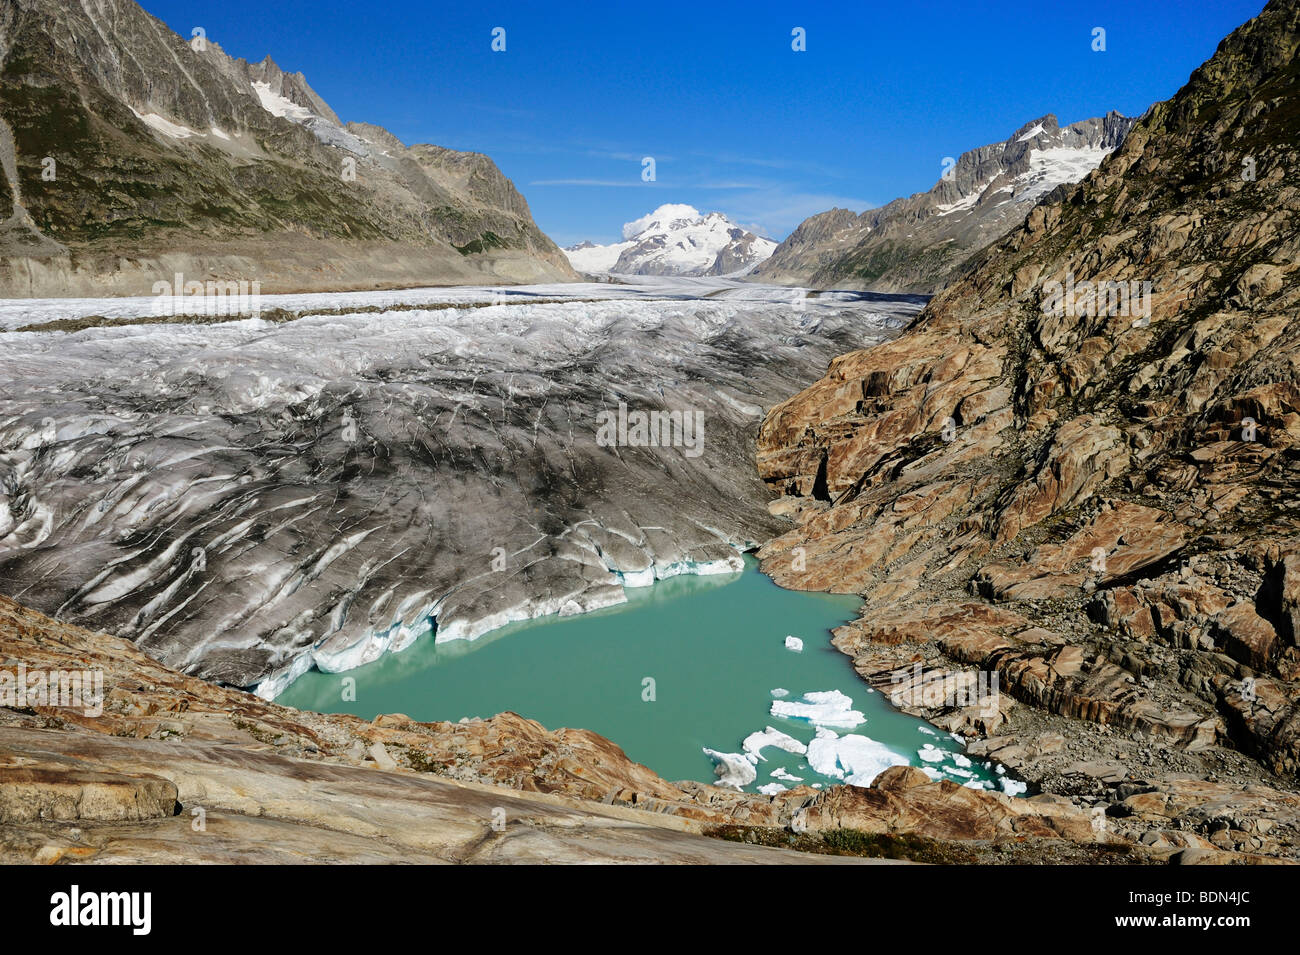 Grand Aletschgletscher glacier avec le lac glaciaire de l'avant-plan, Conthey, Valais, Suisse, Europe Banque D'Images